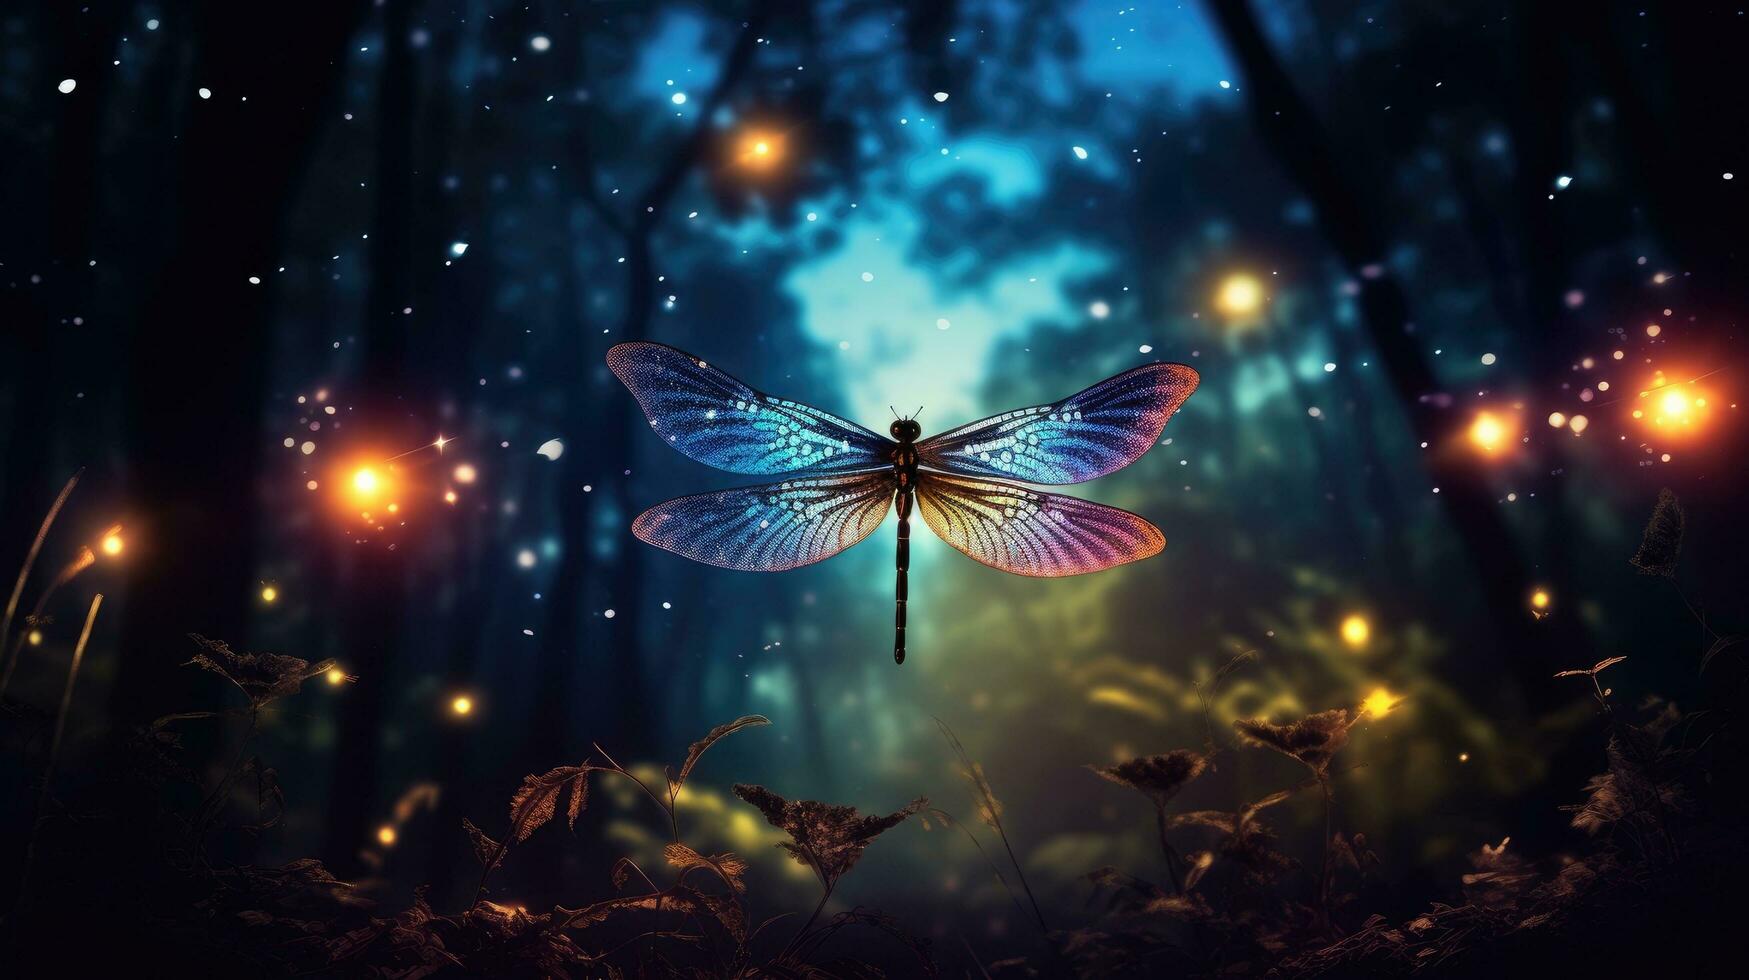 abstrait et magique représentation de libellule et luciole dans une la nuit forêt Fée conte idée photo